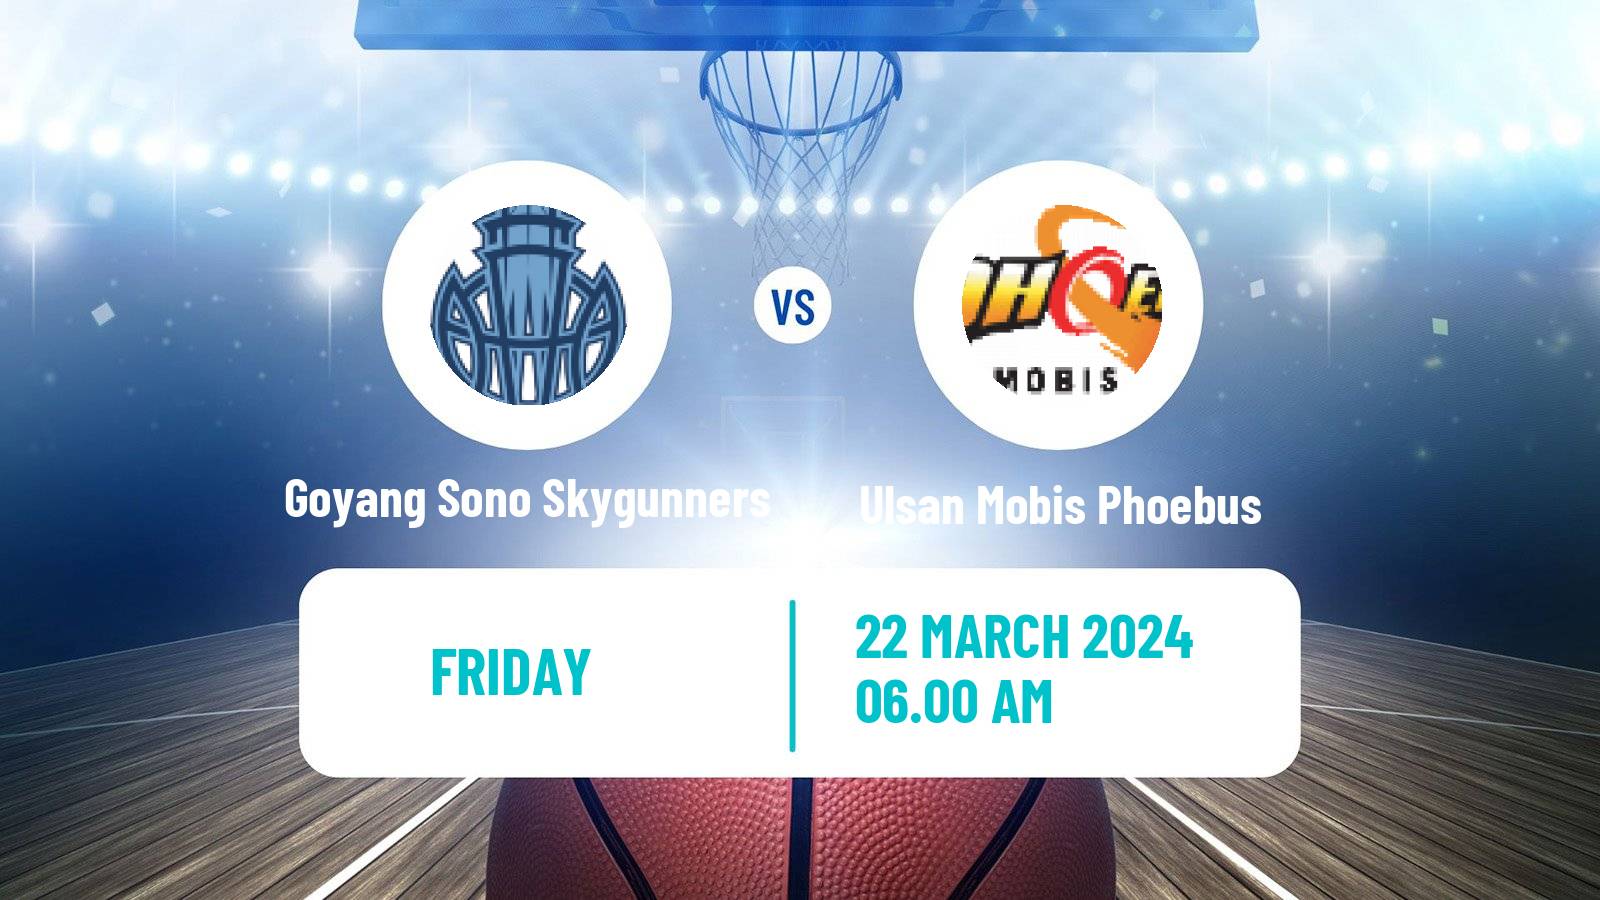 Basketball KBL Goyang Sono Skygunners - Ulsan Mobis Phoebus